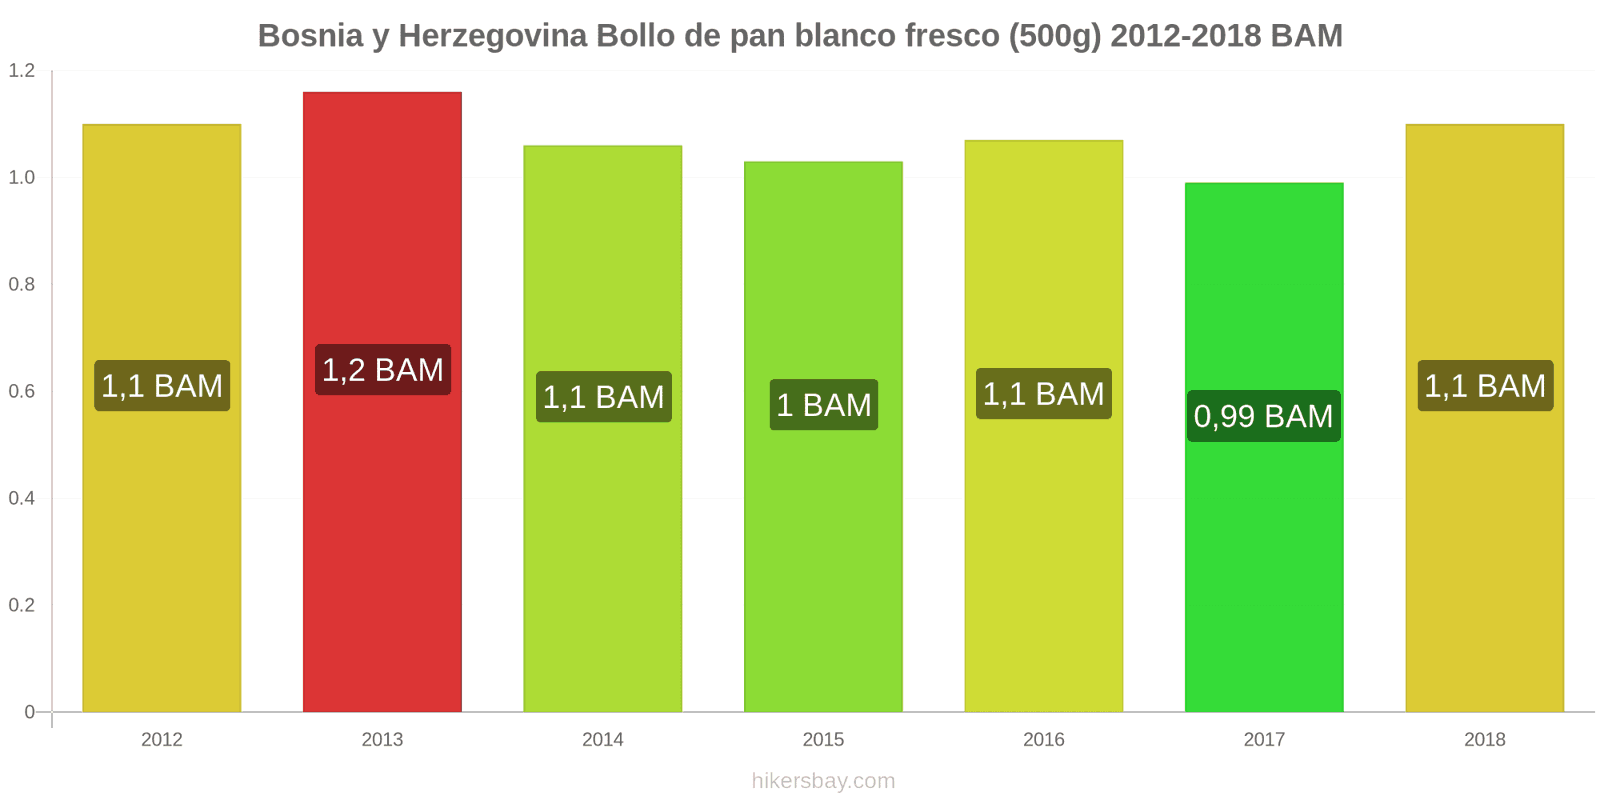 Bosnia y Herzegovina cambios de precios Una barra de pan blanco fresco (500g) hikersbay.com